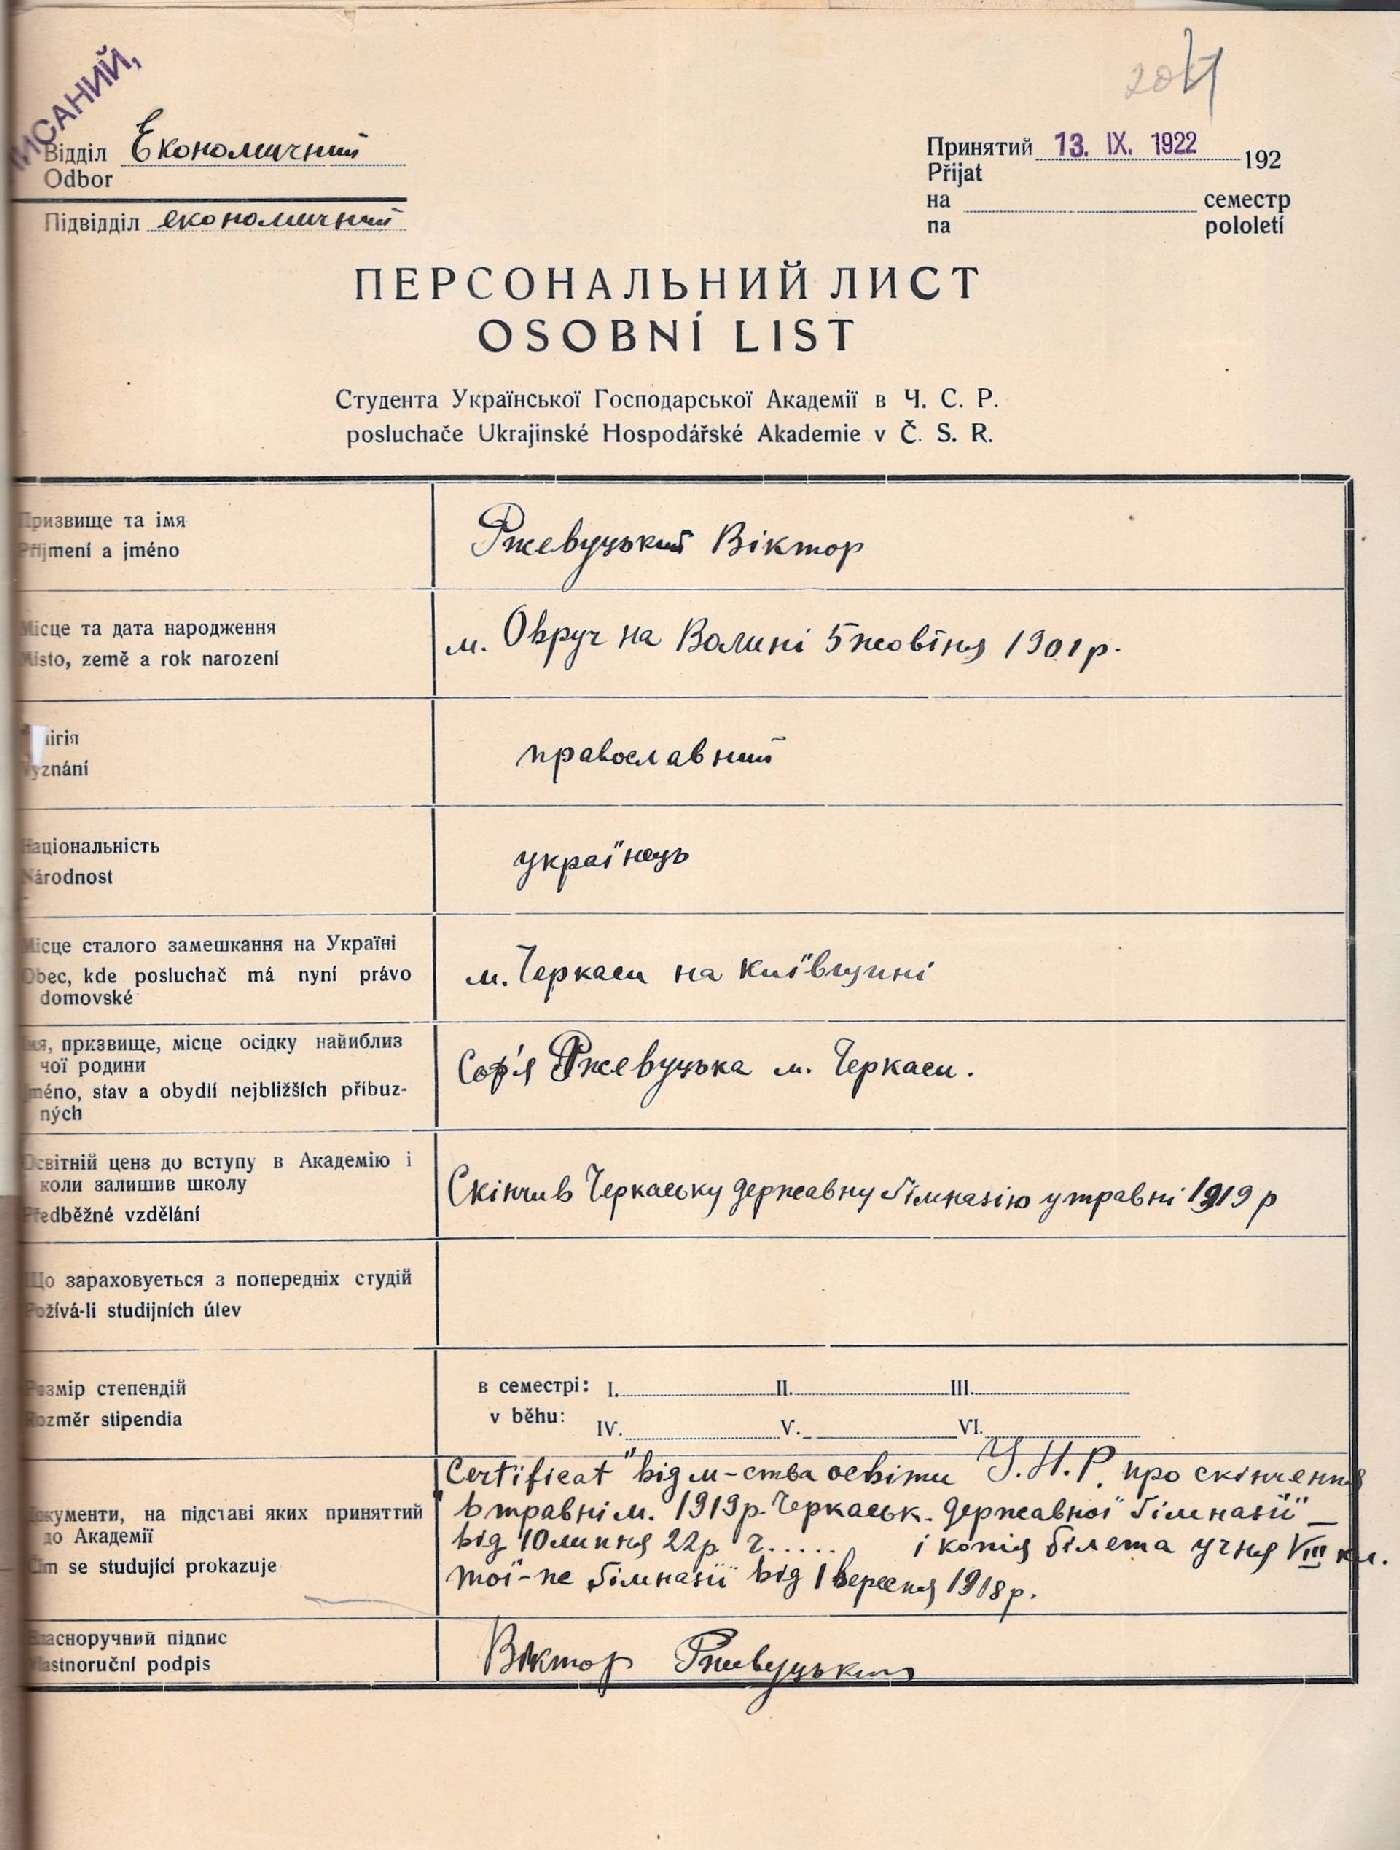 Персональний лист студента Української господарської академії в ЧСР Віктора Ржевуцького. 13 вересня 1922 р.